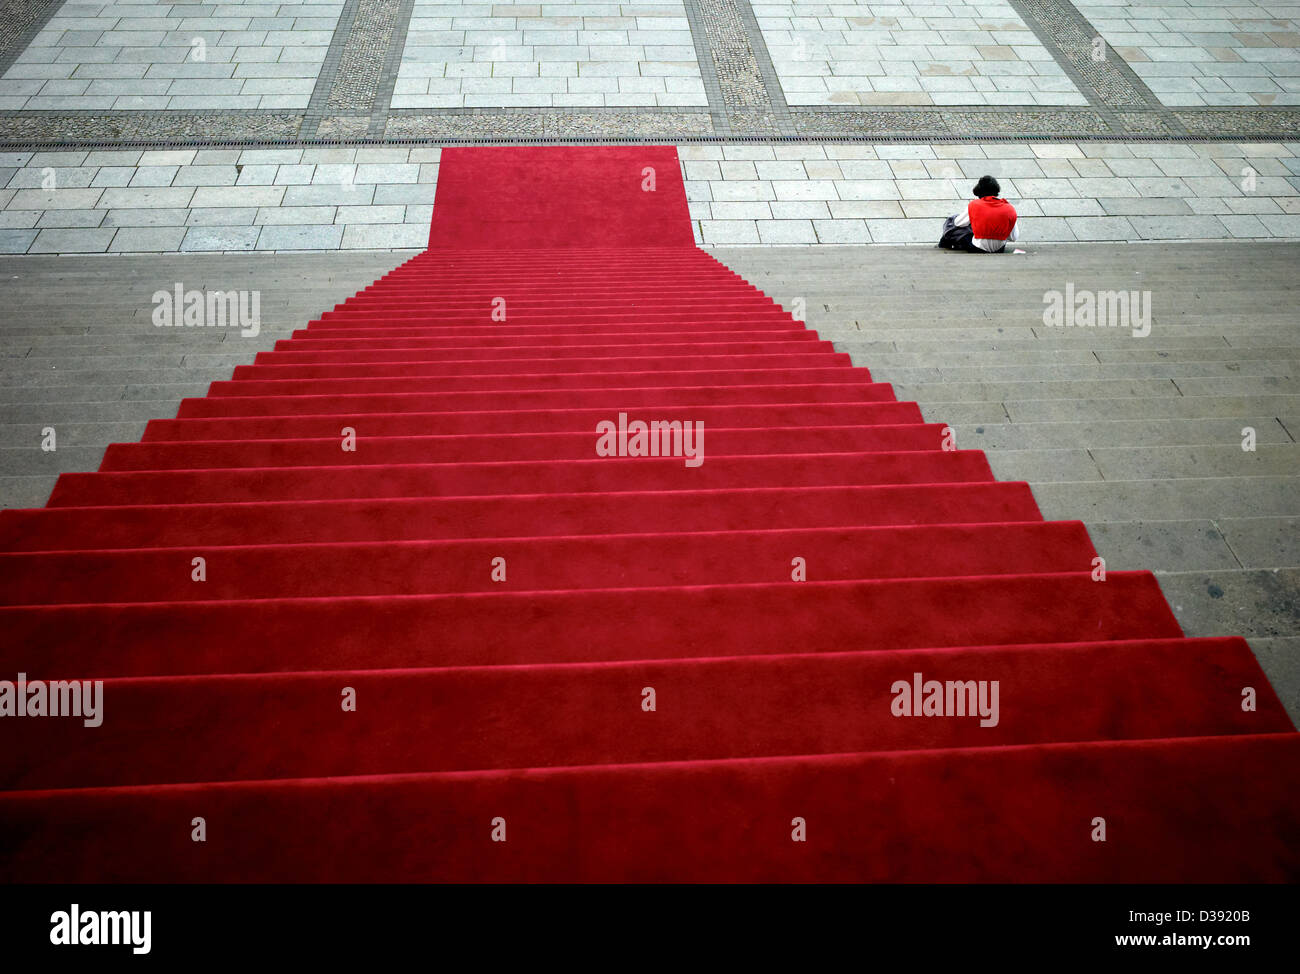 Berlín, Alemania, la alfombra roja en las escaleras de la sala de conciertos Foto de stock